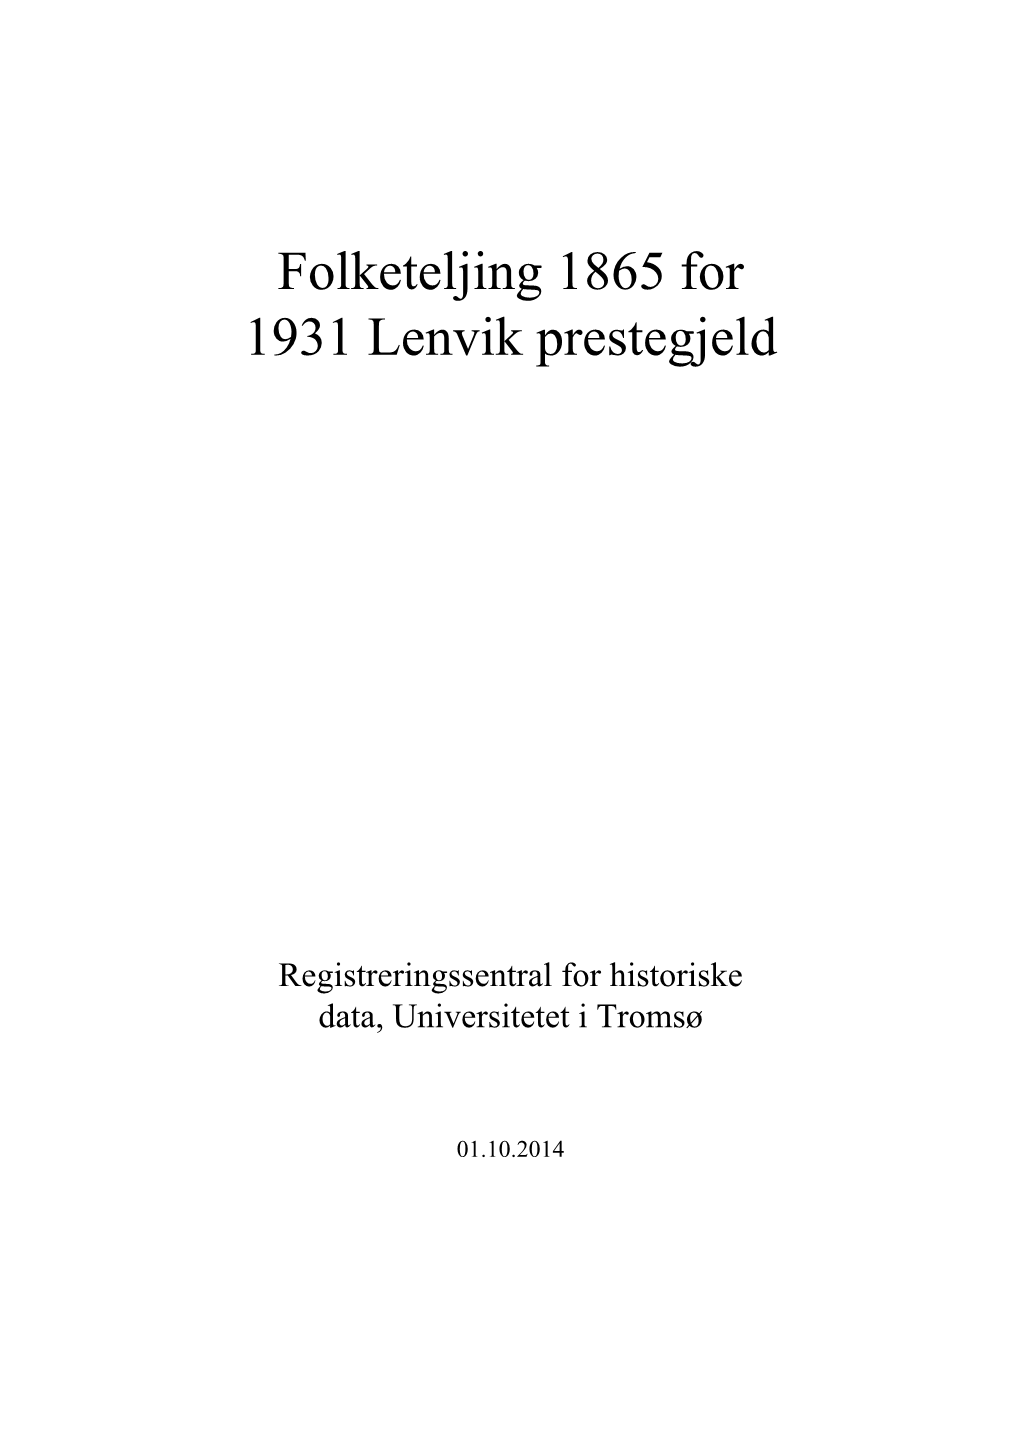 Folketeljing 1865 for 1931 Lenvik Prestegjeld